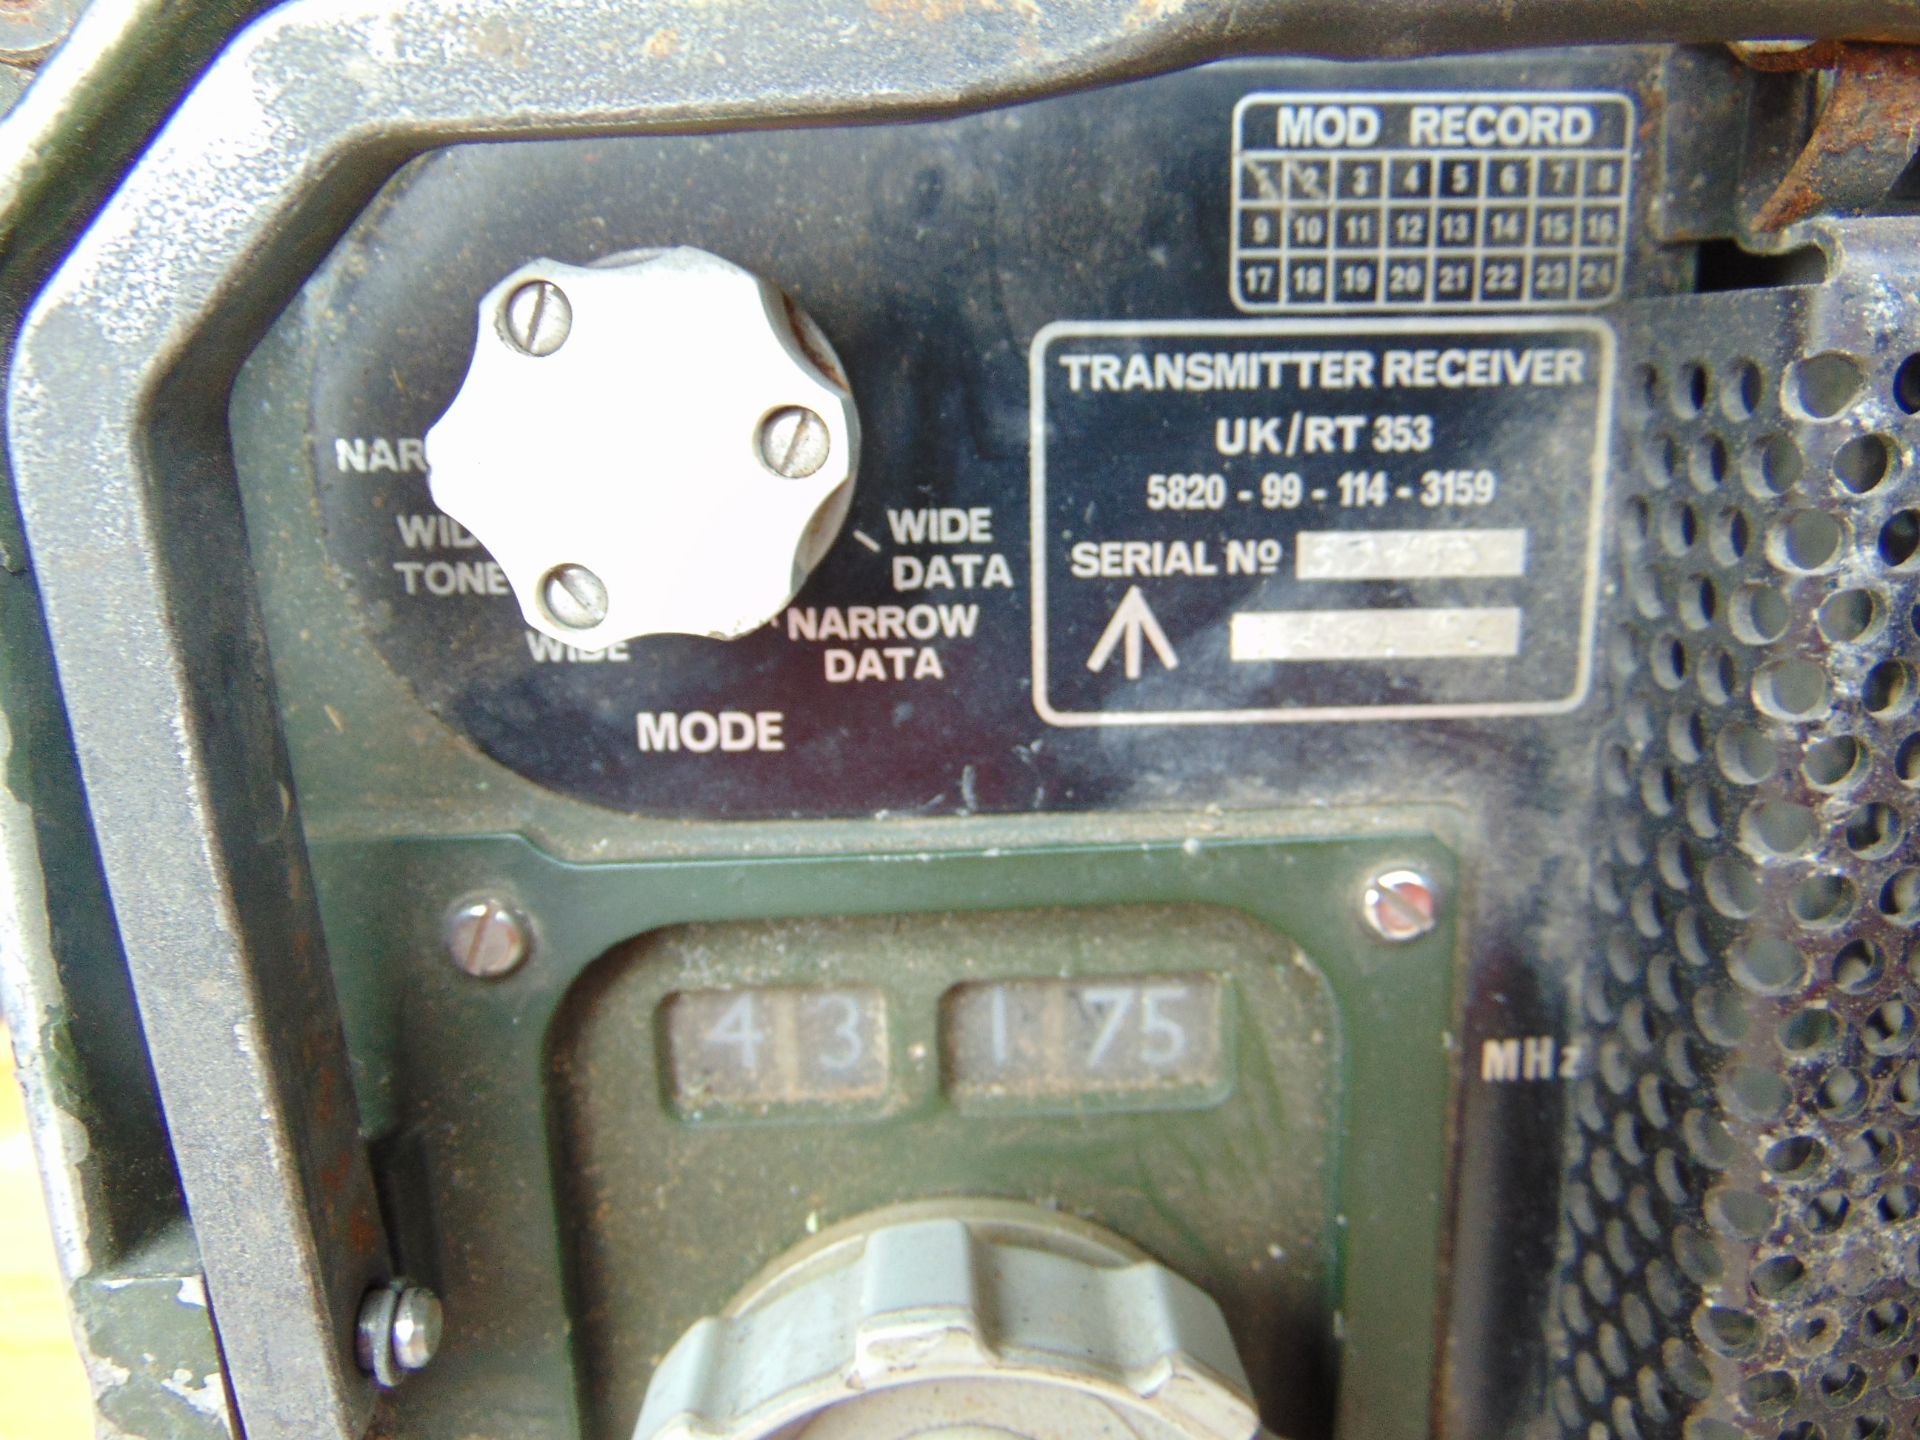 Clansman UK/RT 353 VHF Transmitter Receiver - Image 4 of 4